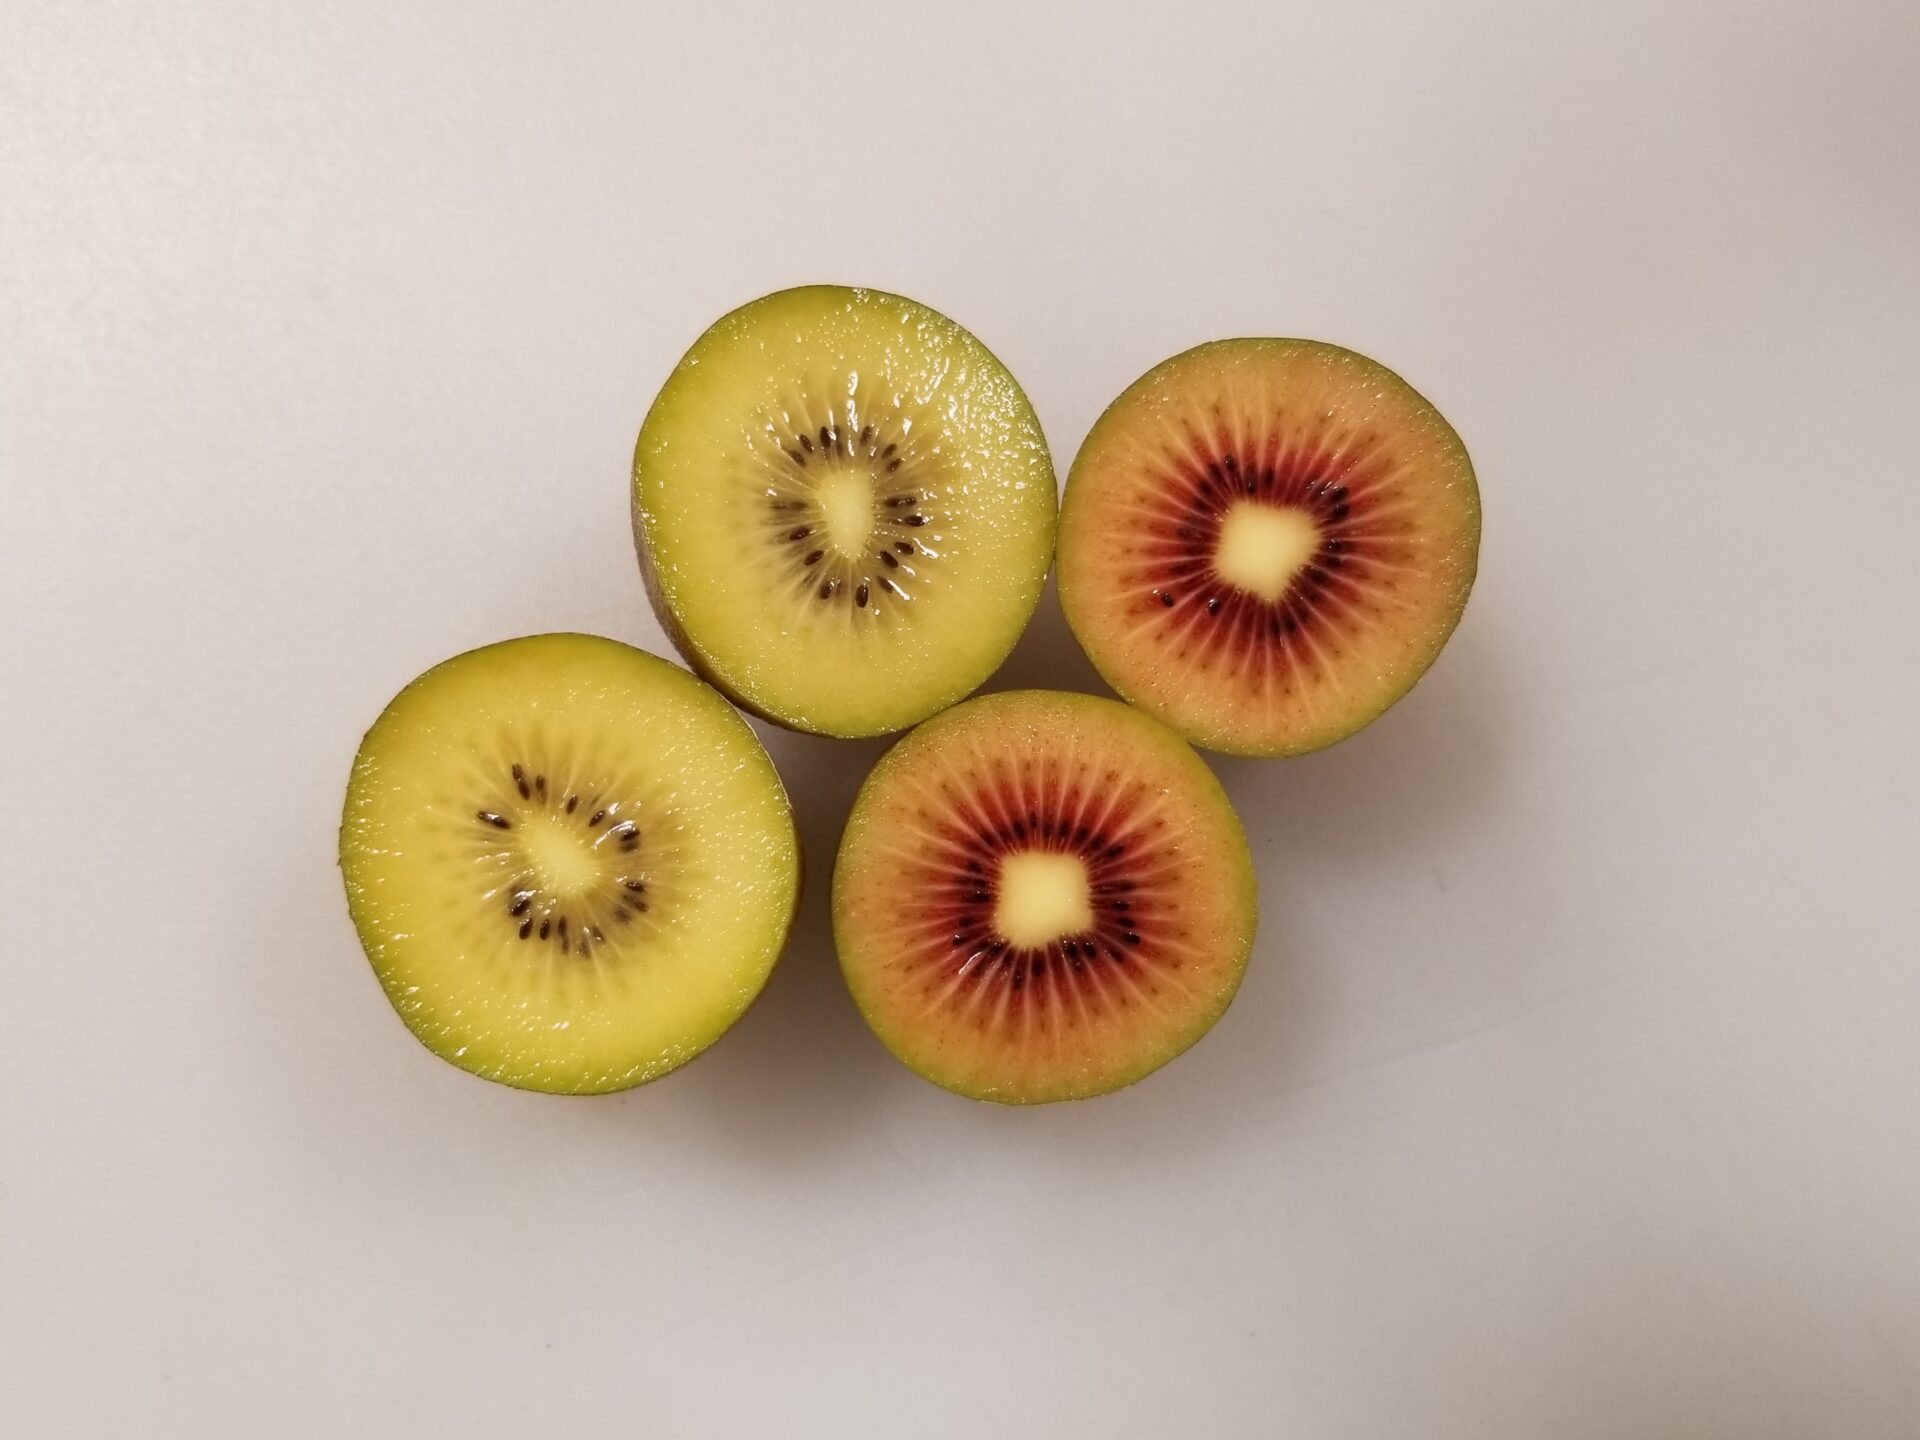 サンゴールドとルビーレッドの果肉の色を比較した写真